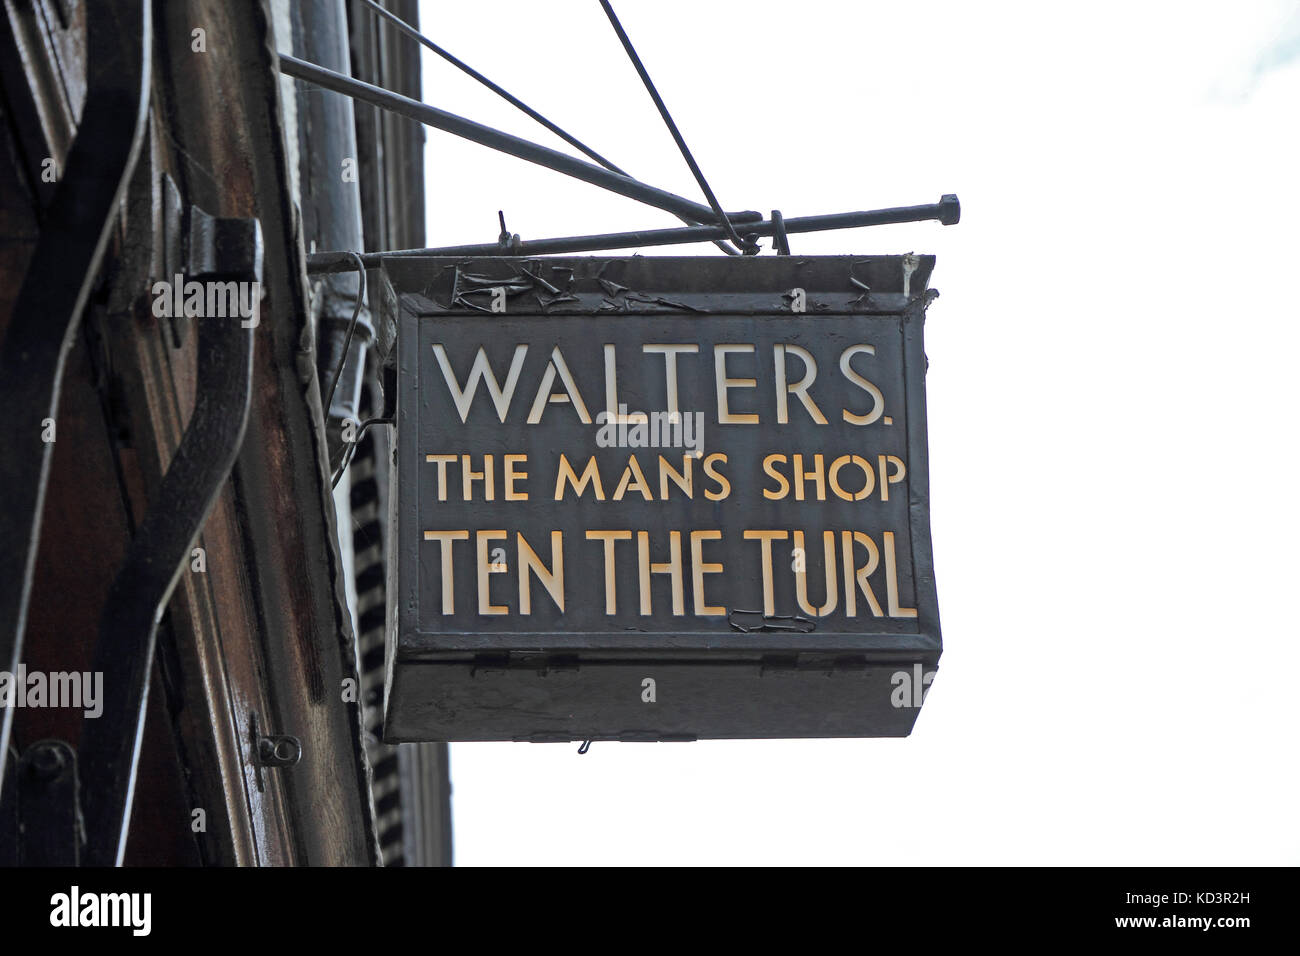 Über Walters die Men's Shop, der turl, Oxford, UK Zeichen Stockfoto